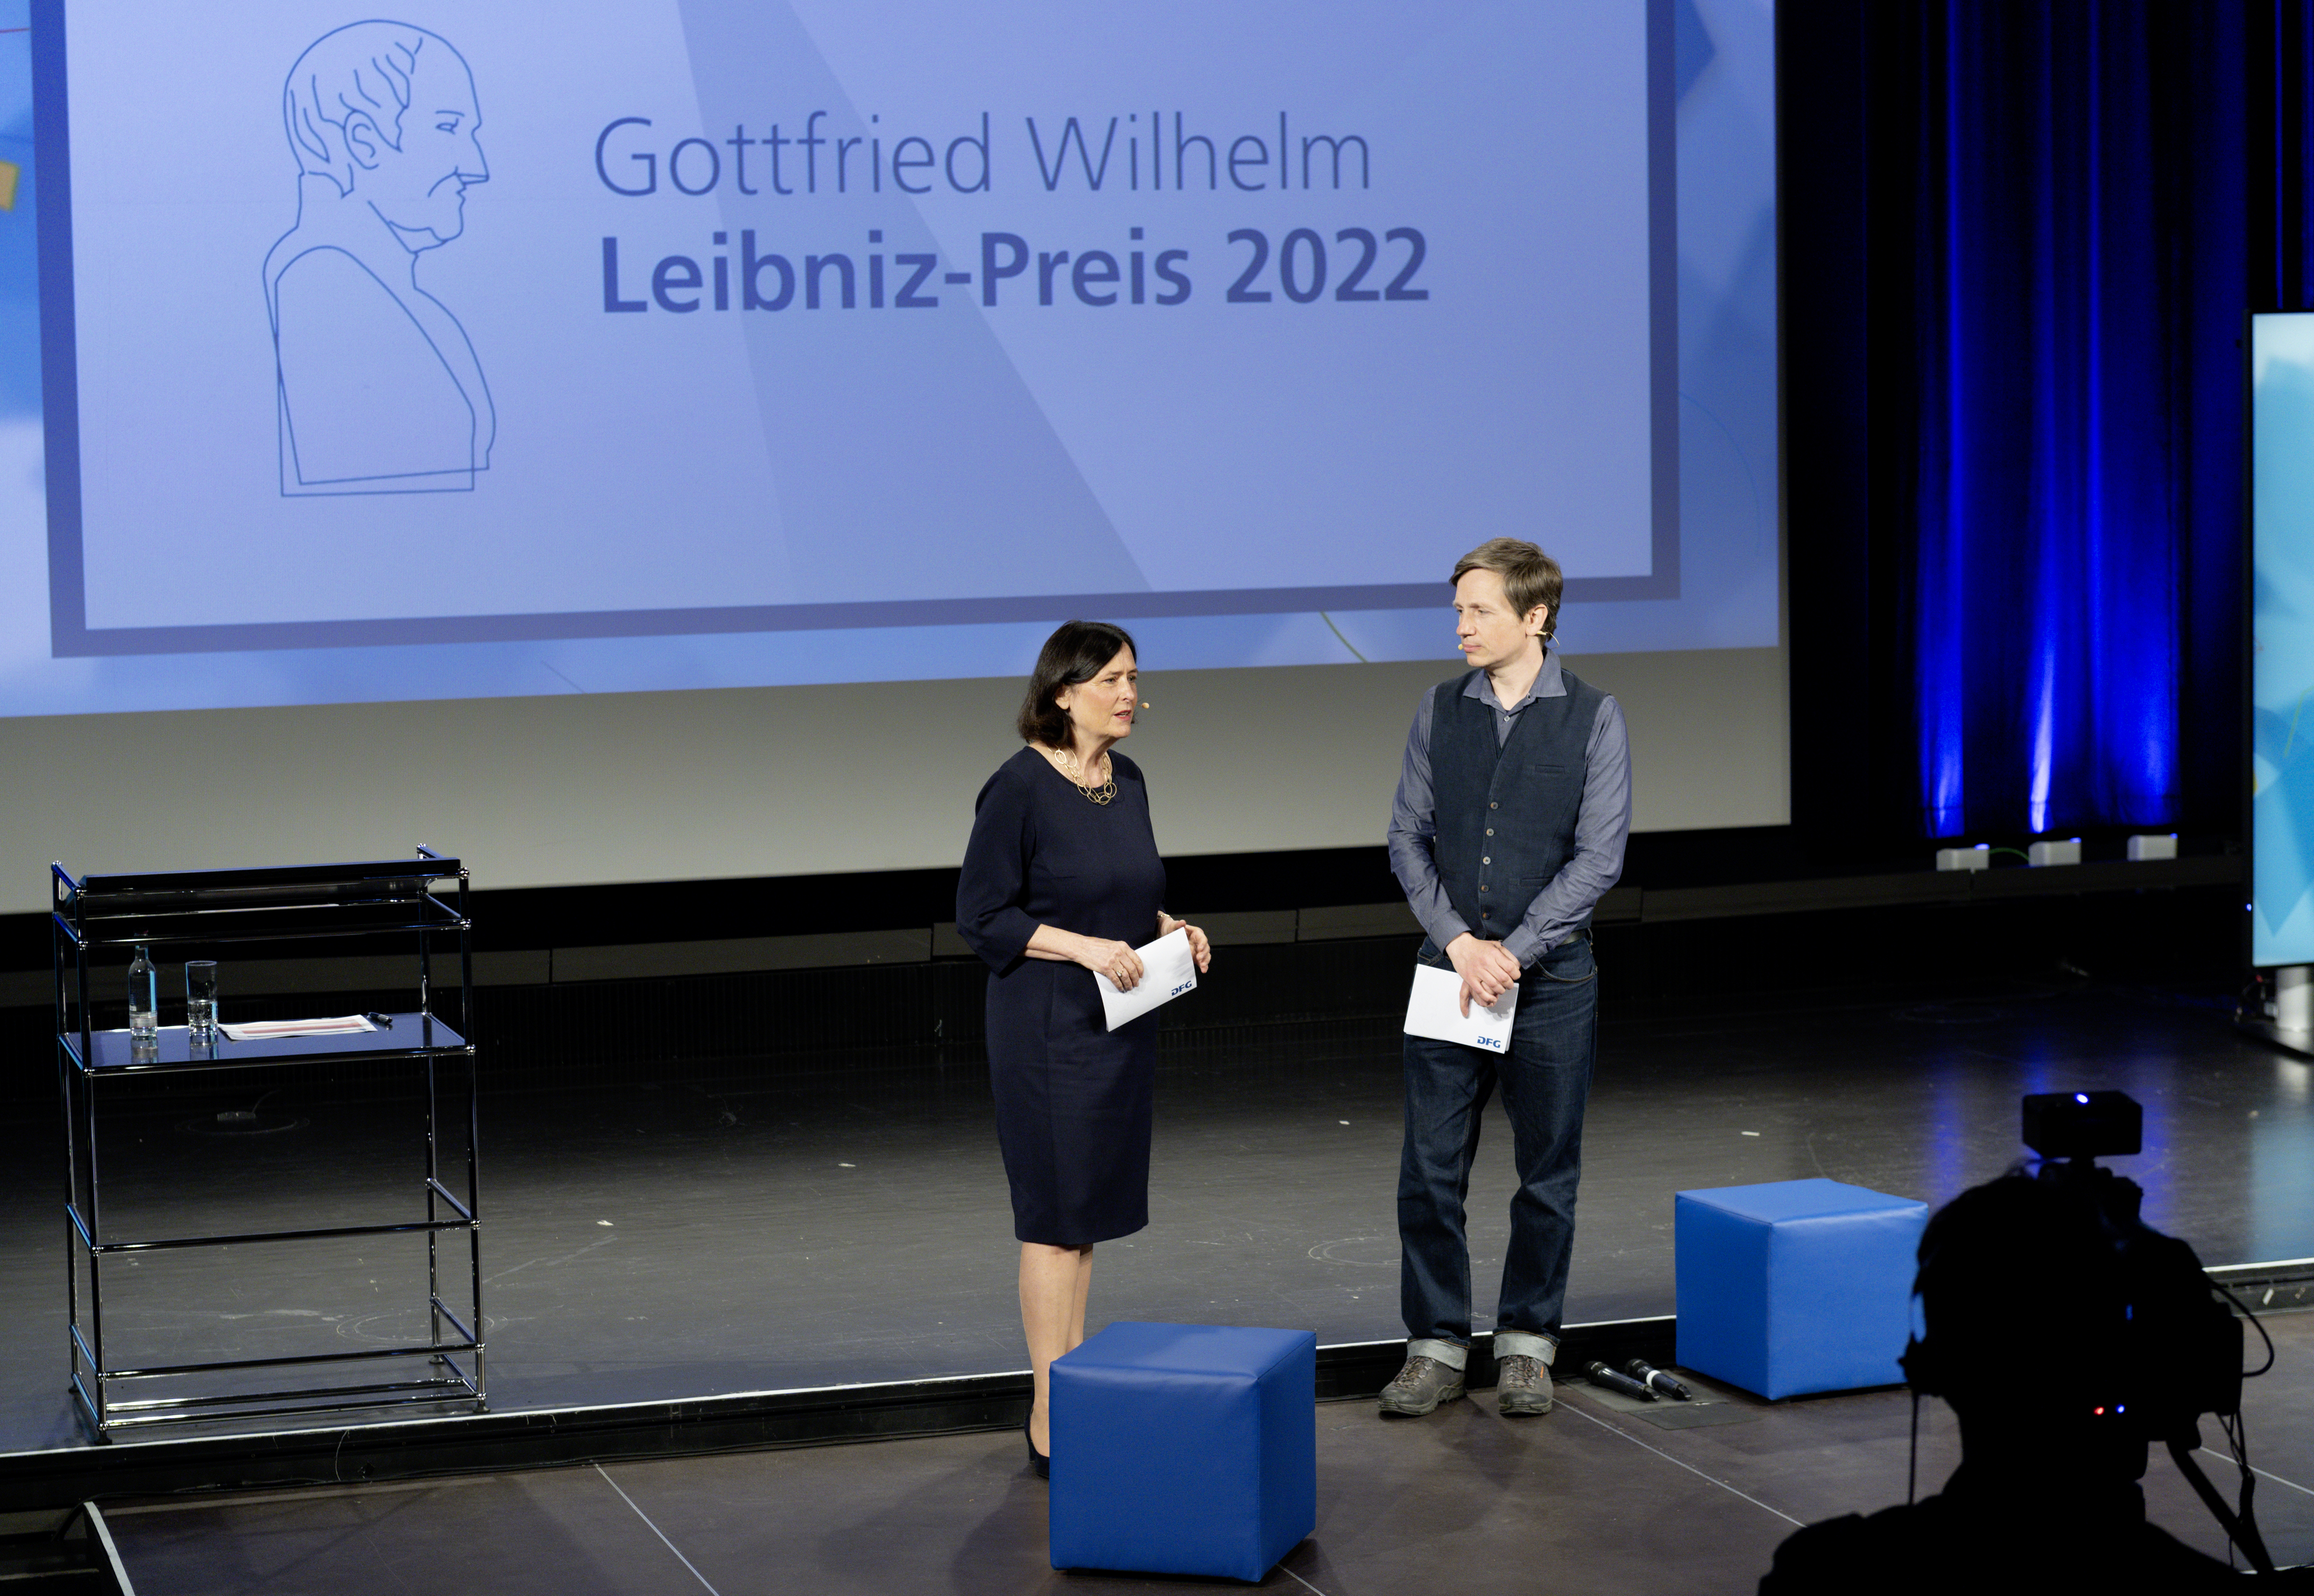 DFG-Präsidentin Katja Becker begrüßt die geladenen Gäste sowie die Zuschauerinnen und Zuschauer des Livestreams gemeinsam mit Moderator Johannes Büchs.